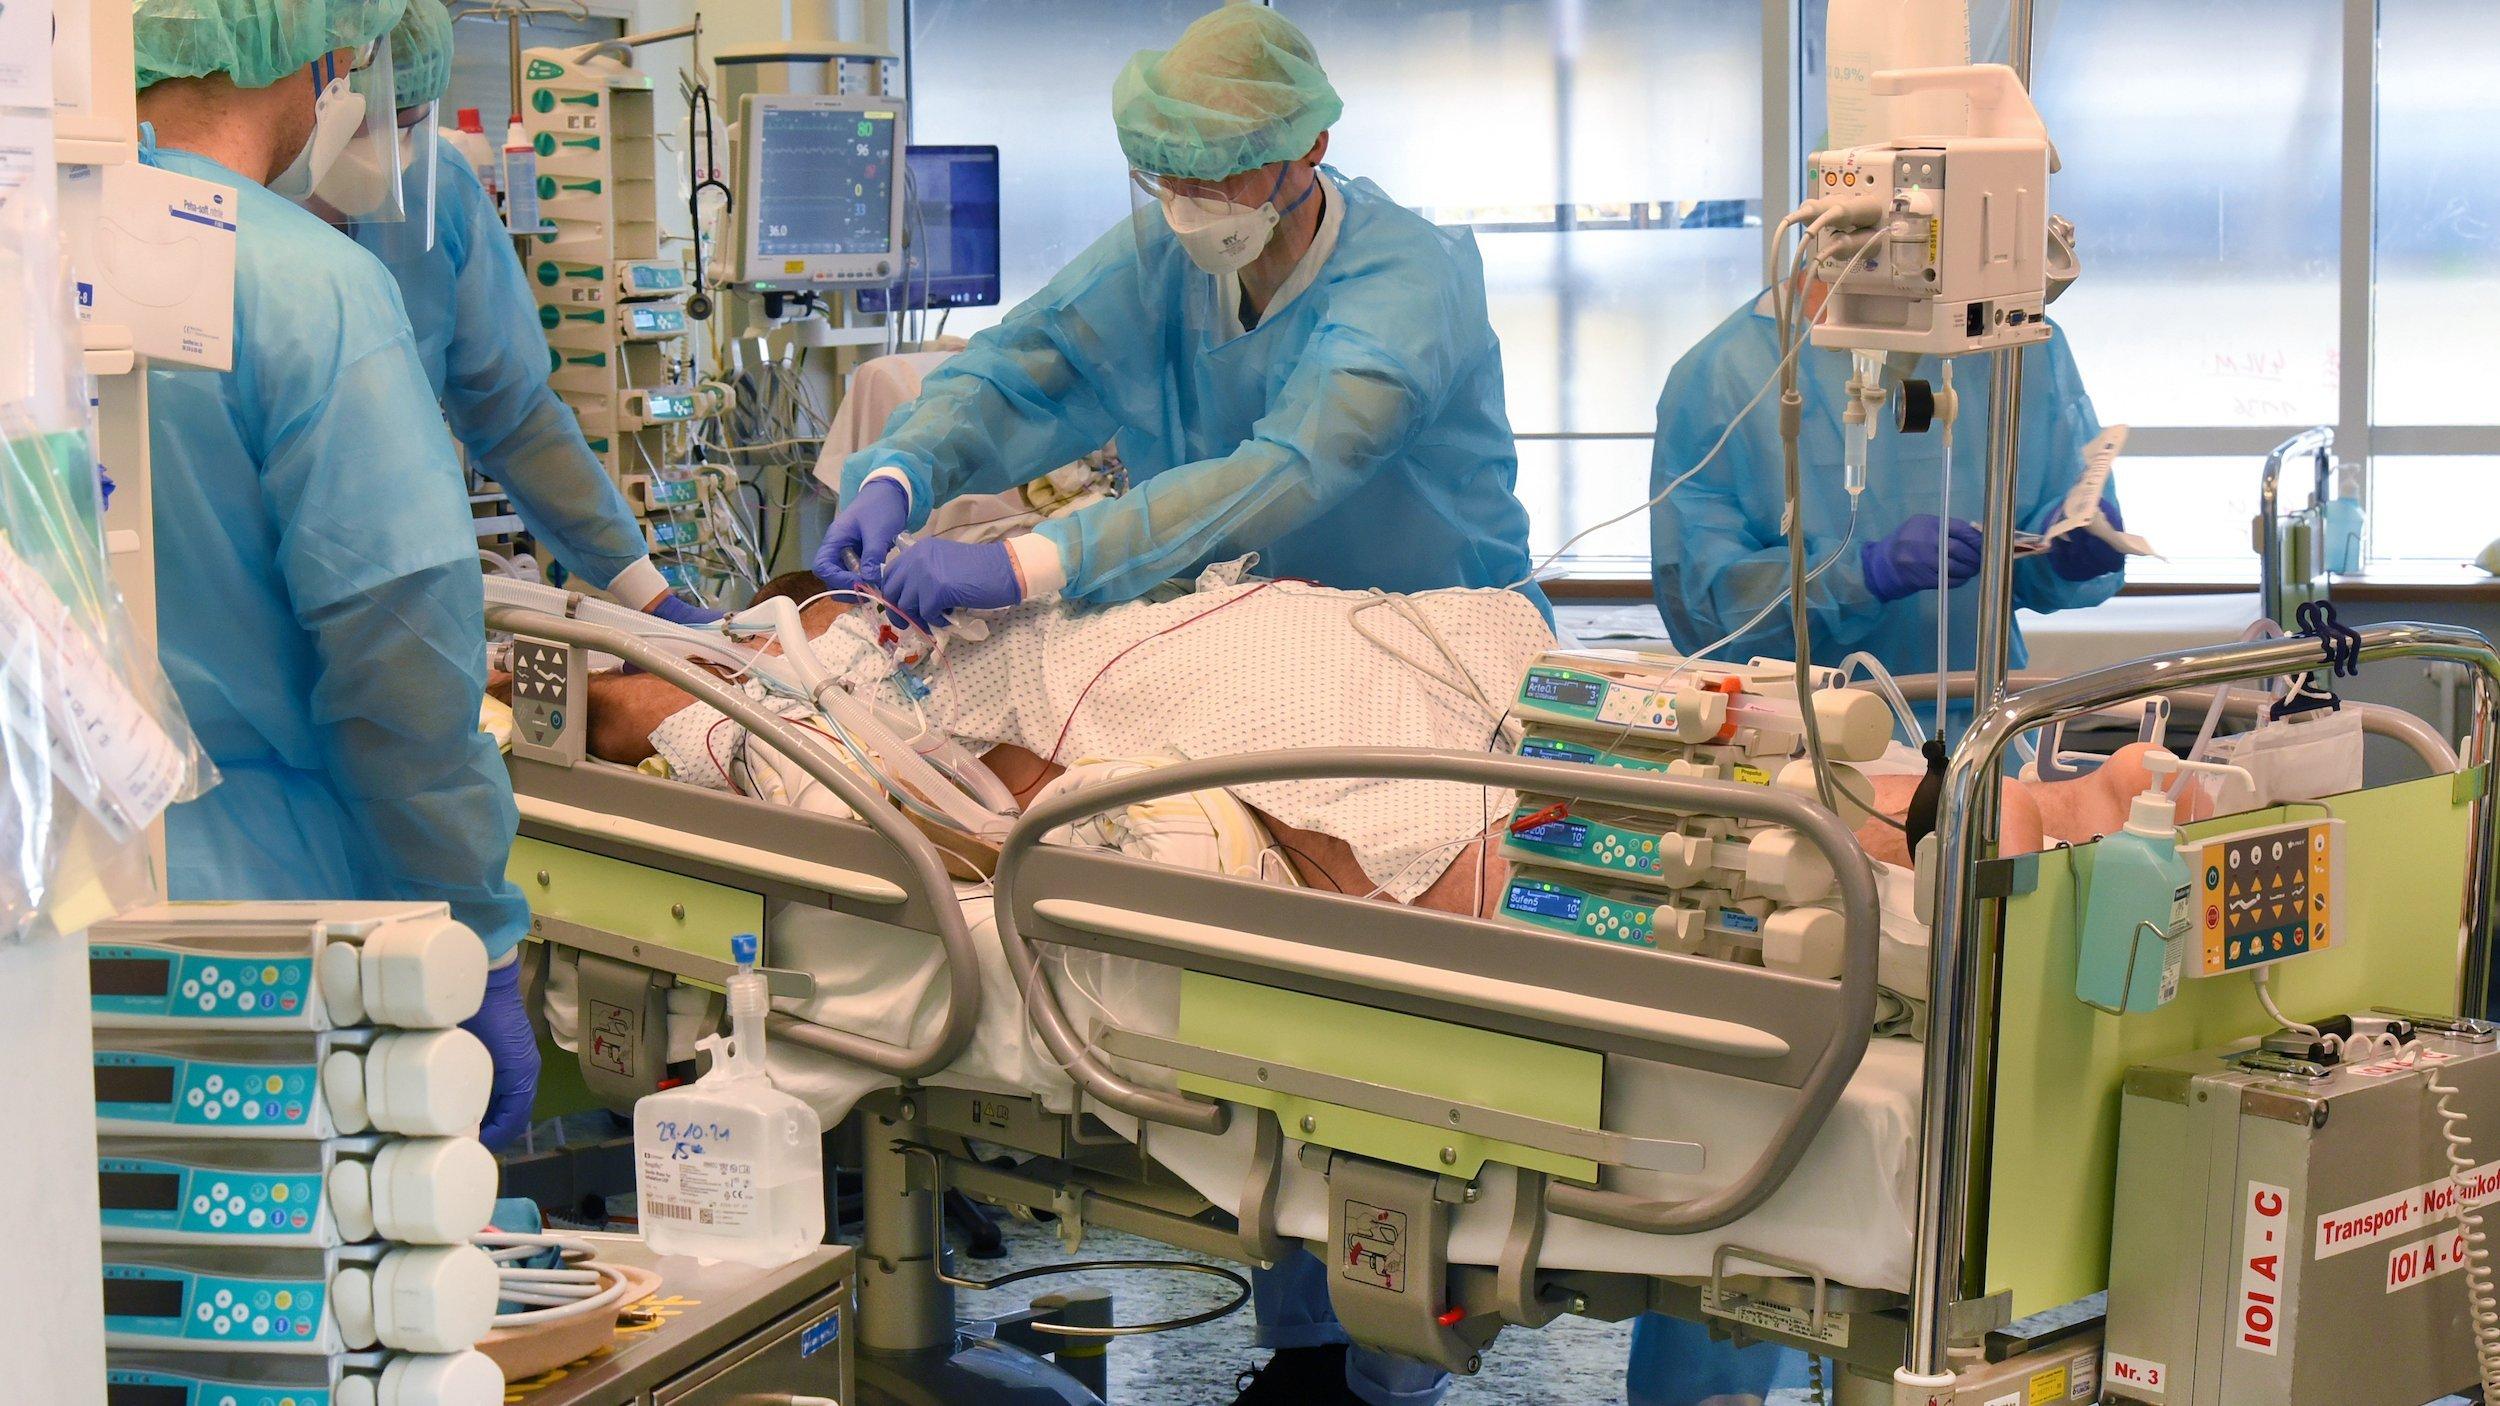 Ein medizinisches Team in Schutzkleidung ist inmitten von medizinischem Gerät um den auf dem Bauch liegenden Patienten versammelt.